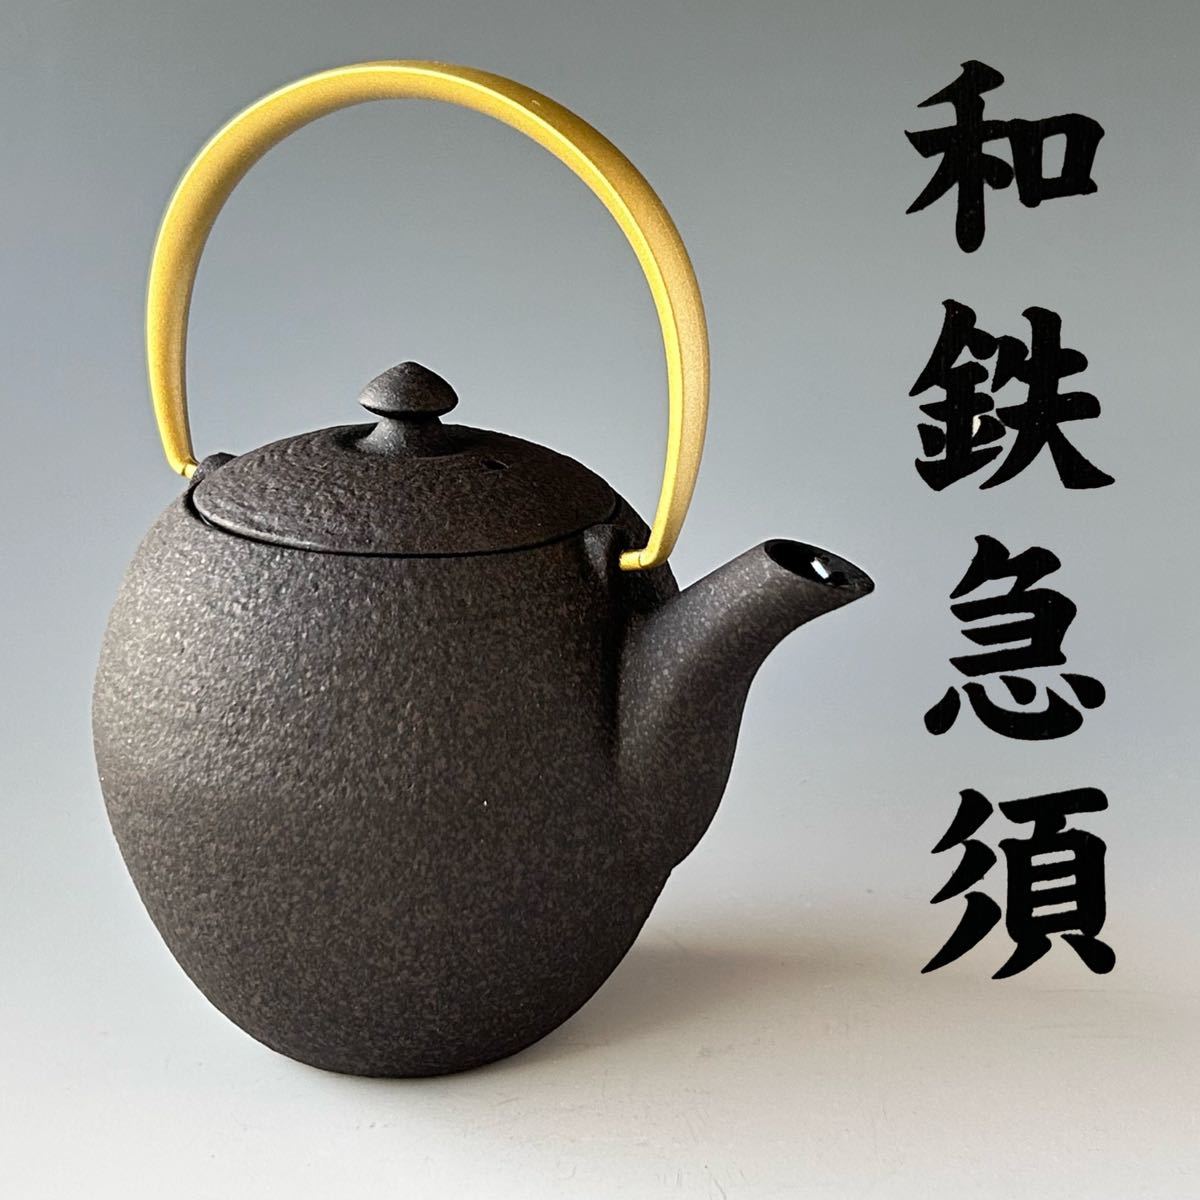 和鉄 急須 「まゆ」菊地保寿堂 木箱入 鋳物 煎茶 紅茶 烏龍茶 工芸品